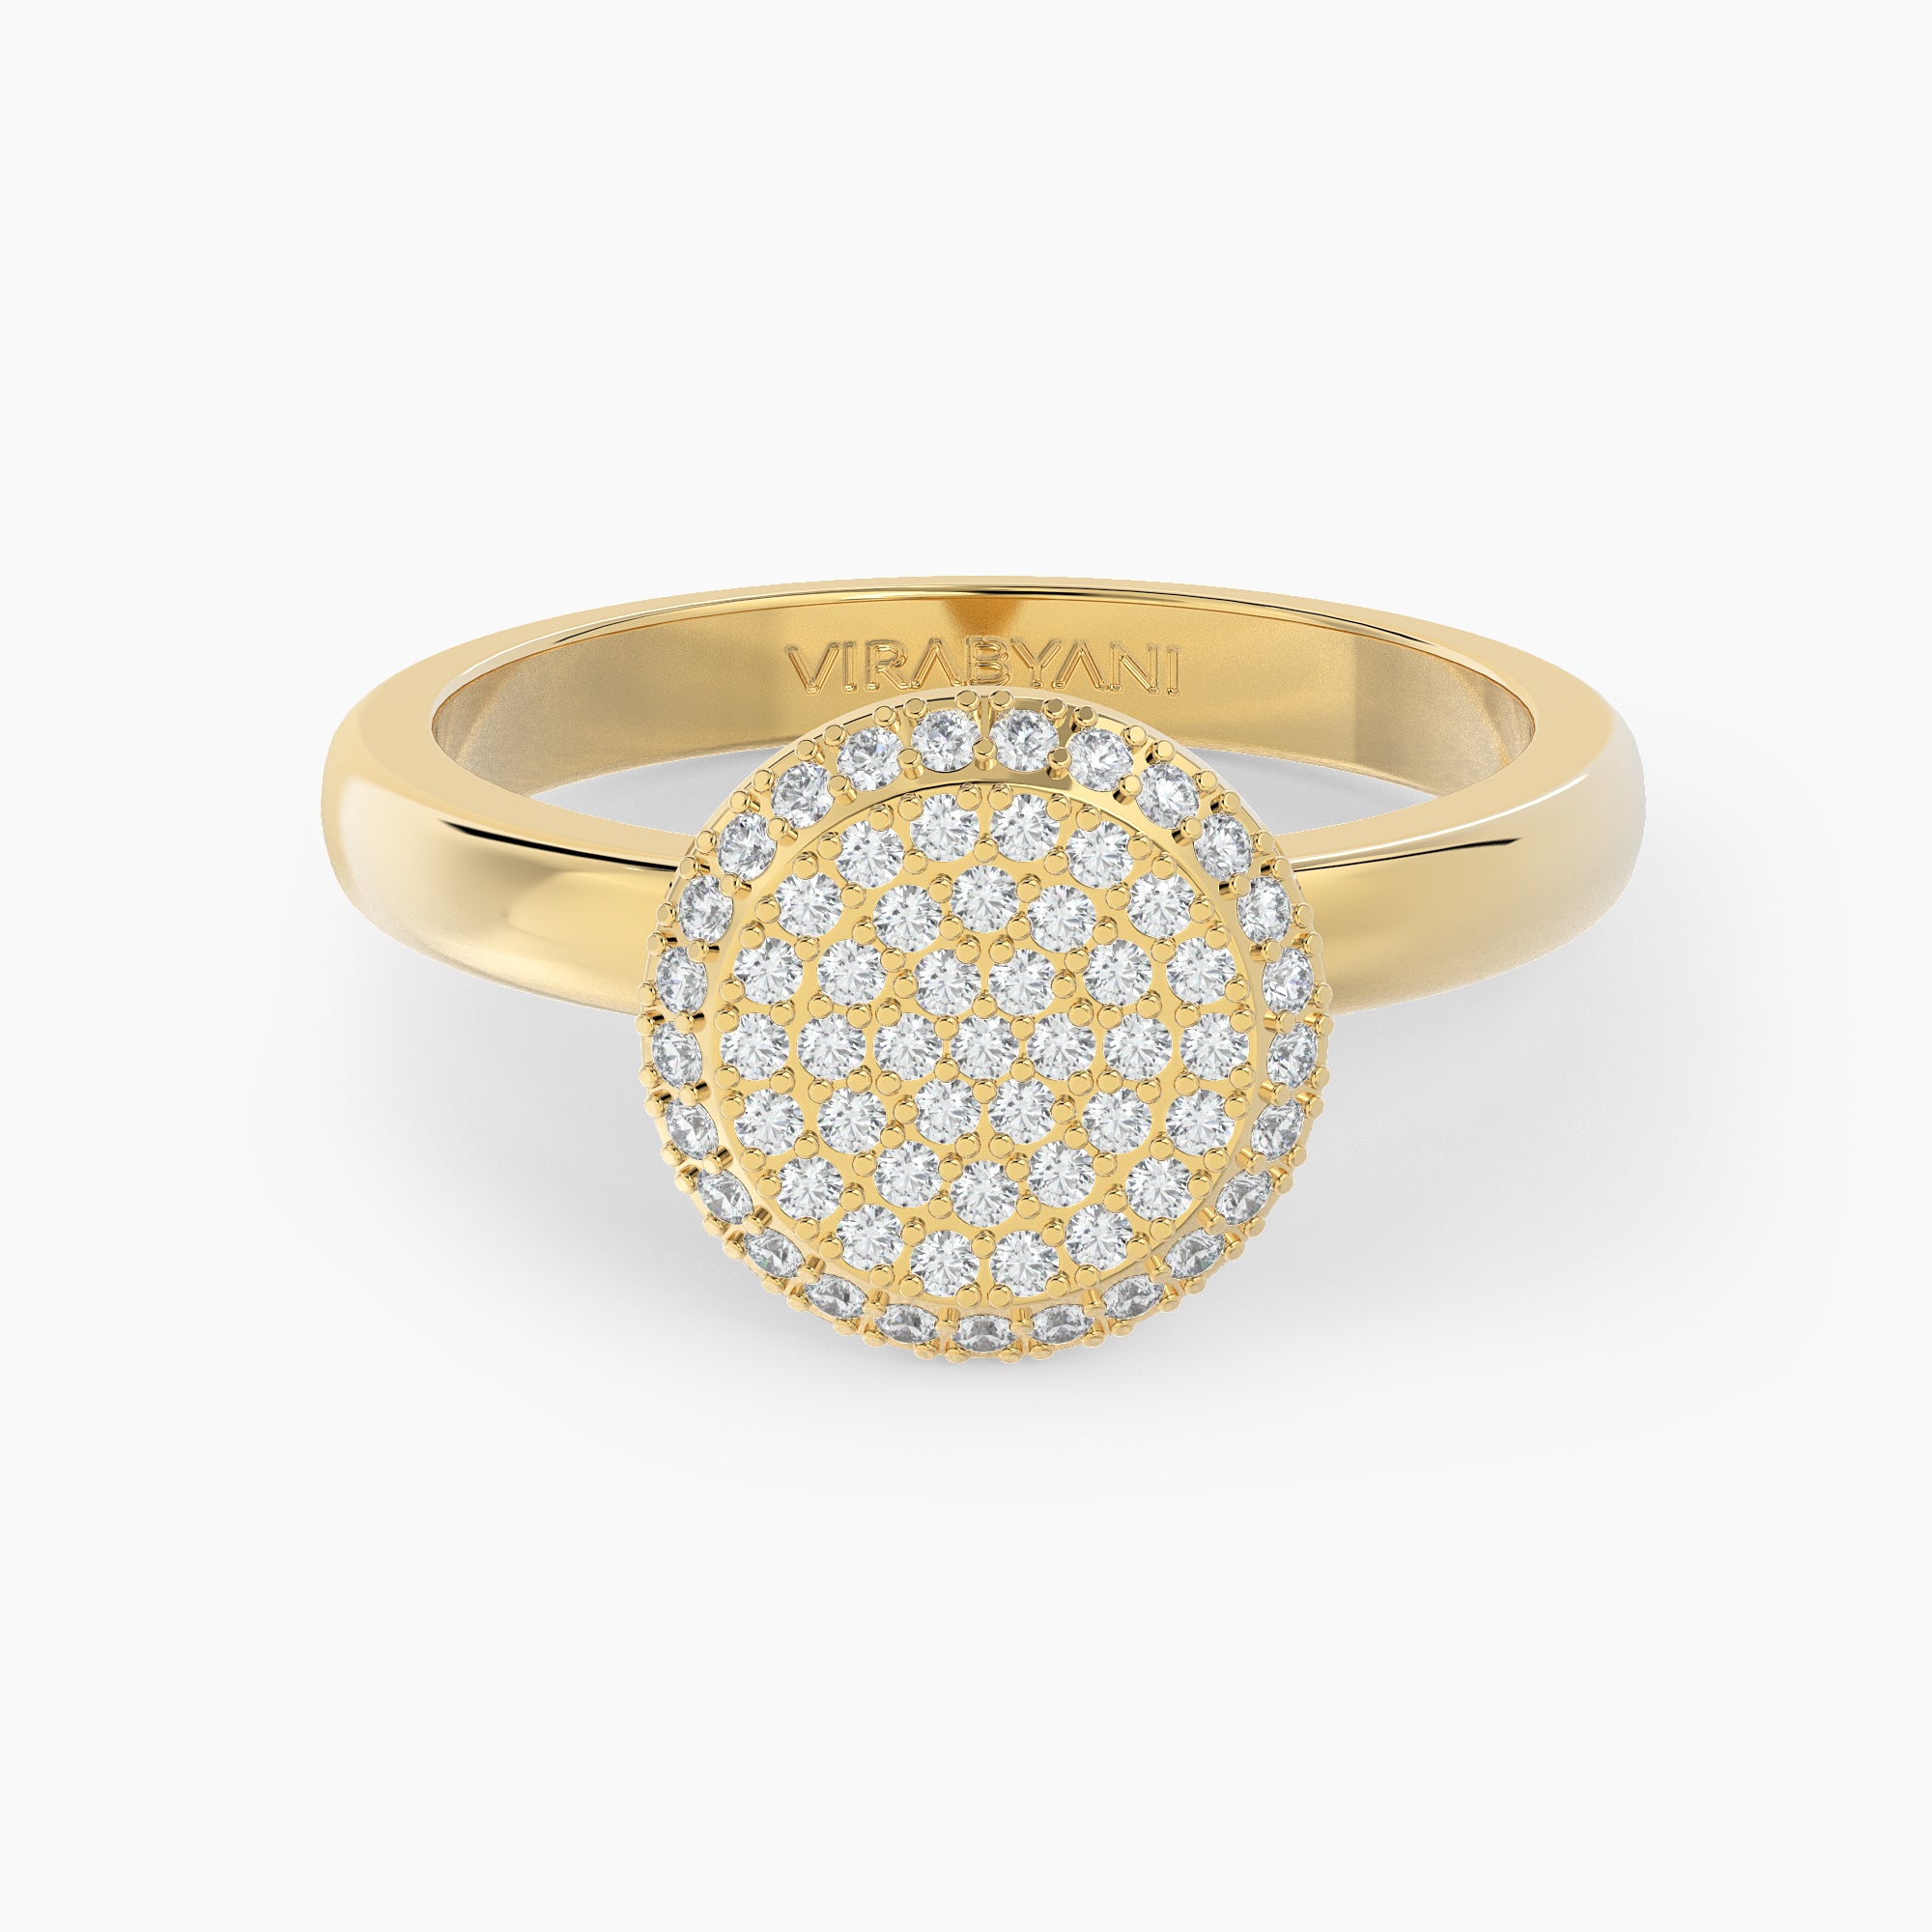 Round Shaped AMoré Pavé Ring With 0.50 ct. Diamonds